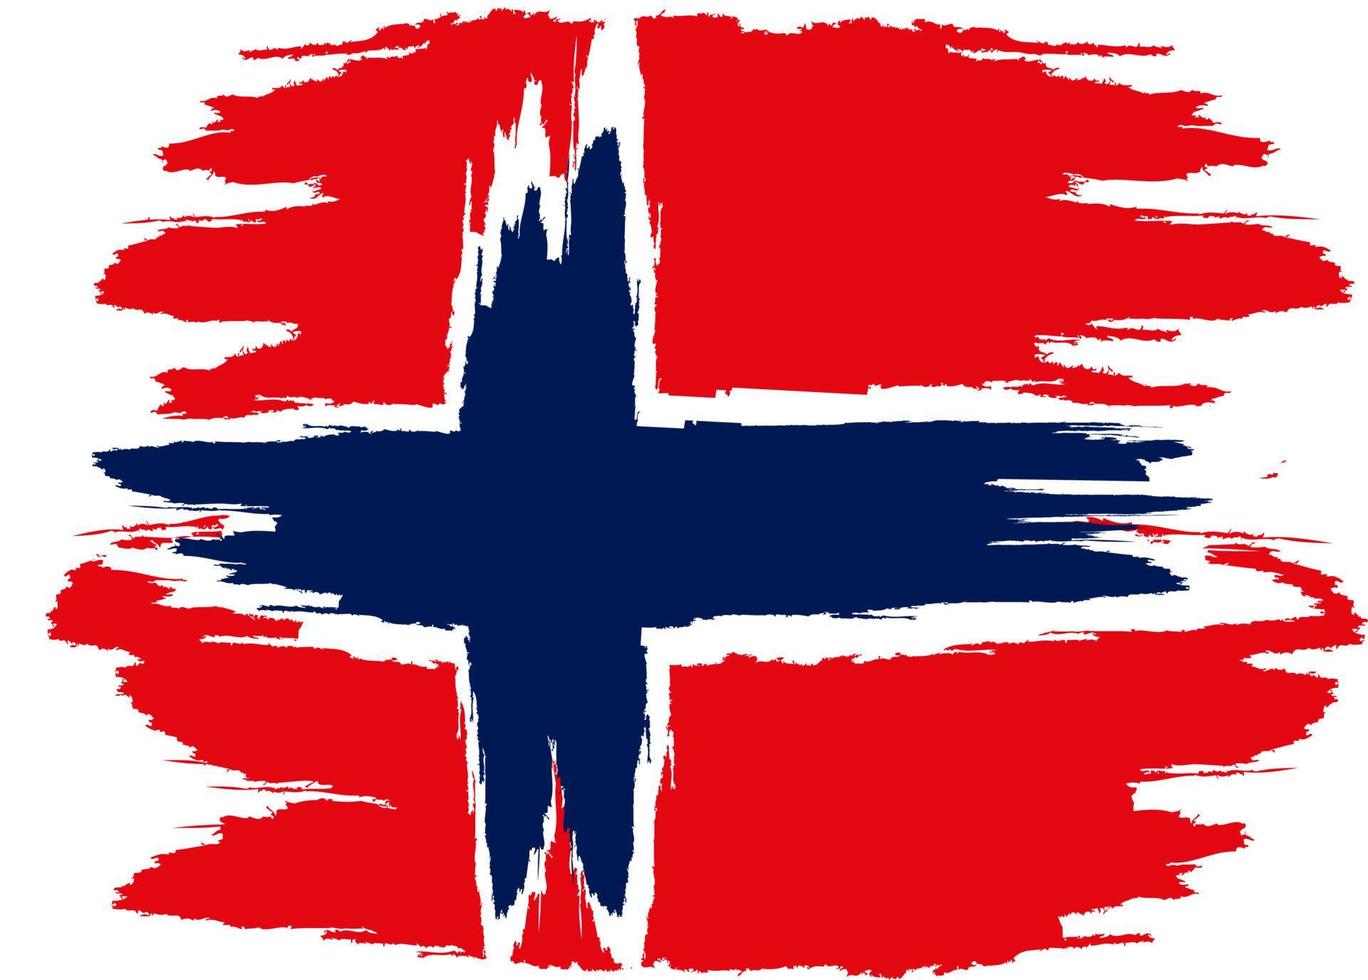 drapeau de la norvège. drapeau peint à la brosse de norvège. drapeau de la norvège avec texture grunge. illustration vectorielle vecteur